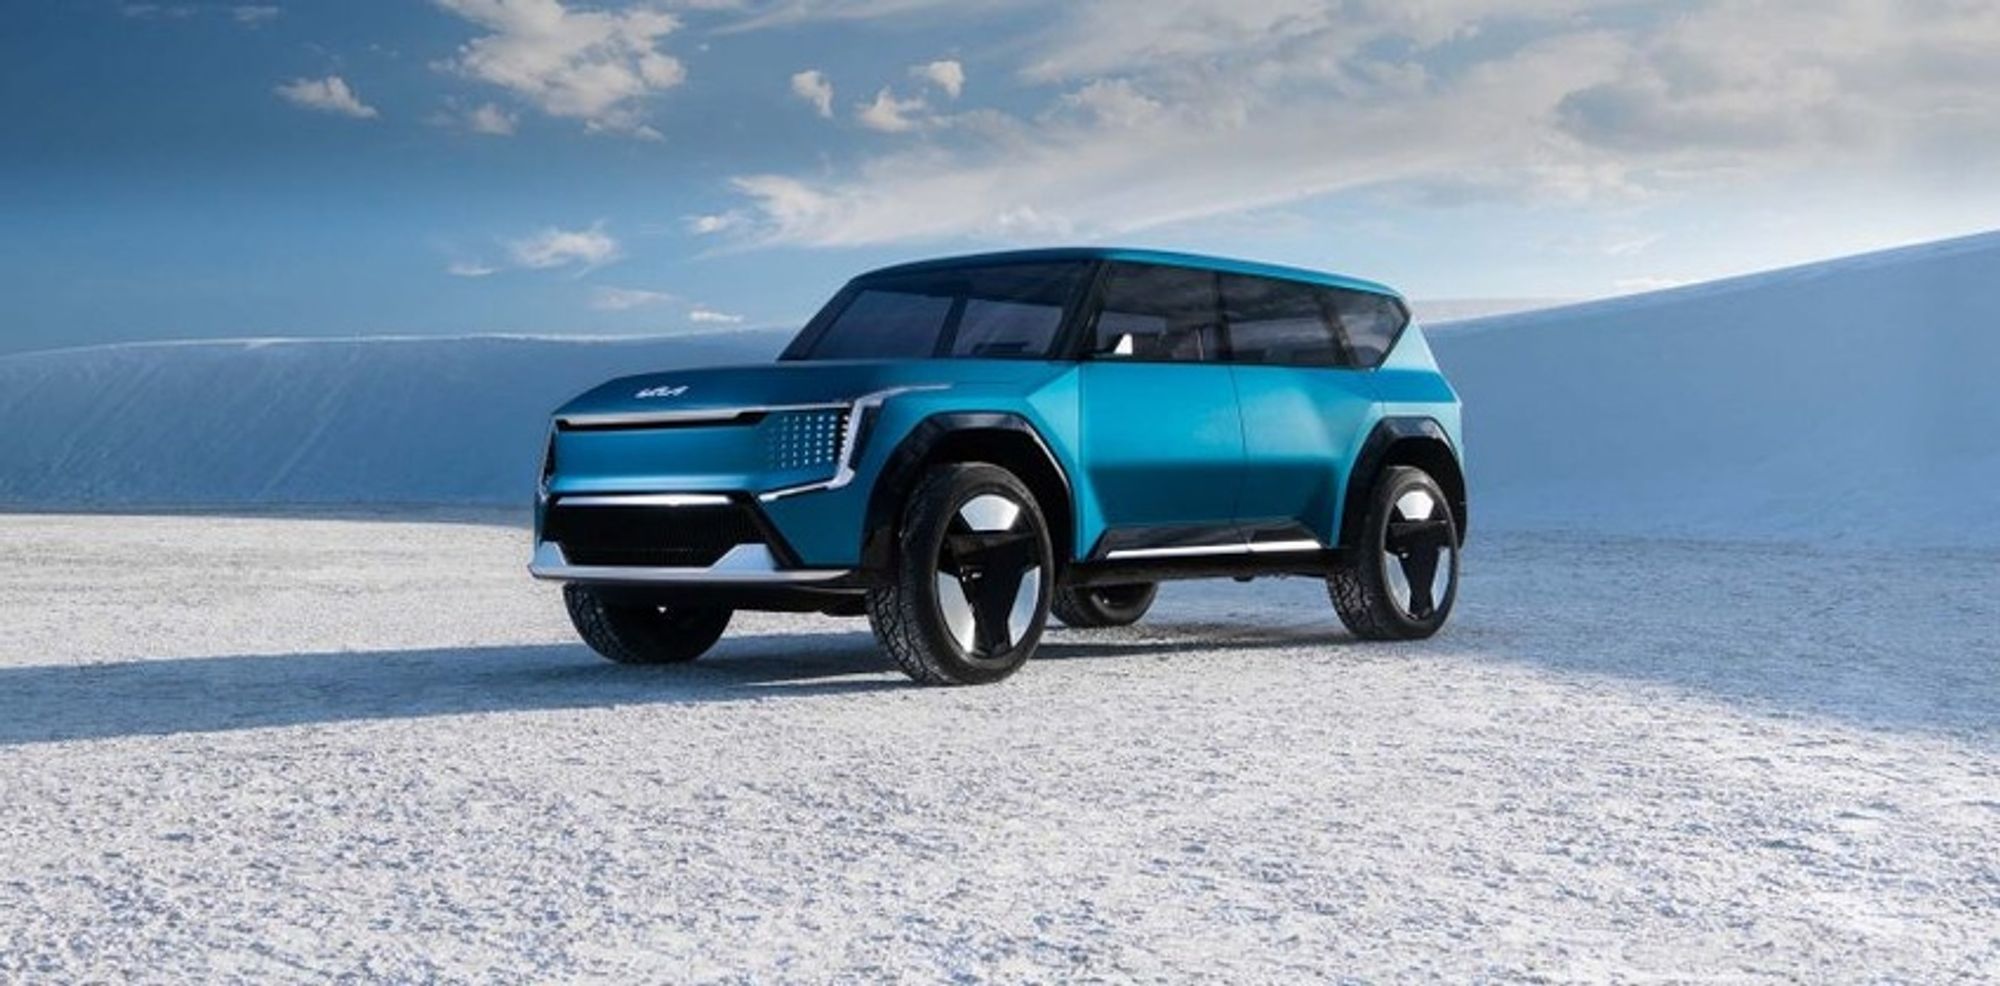 Kia Launching Self-Driving Electric SUV in 2023